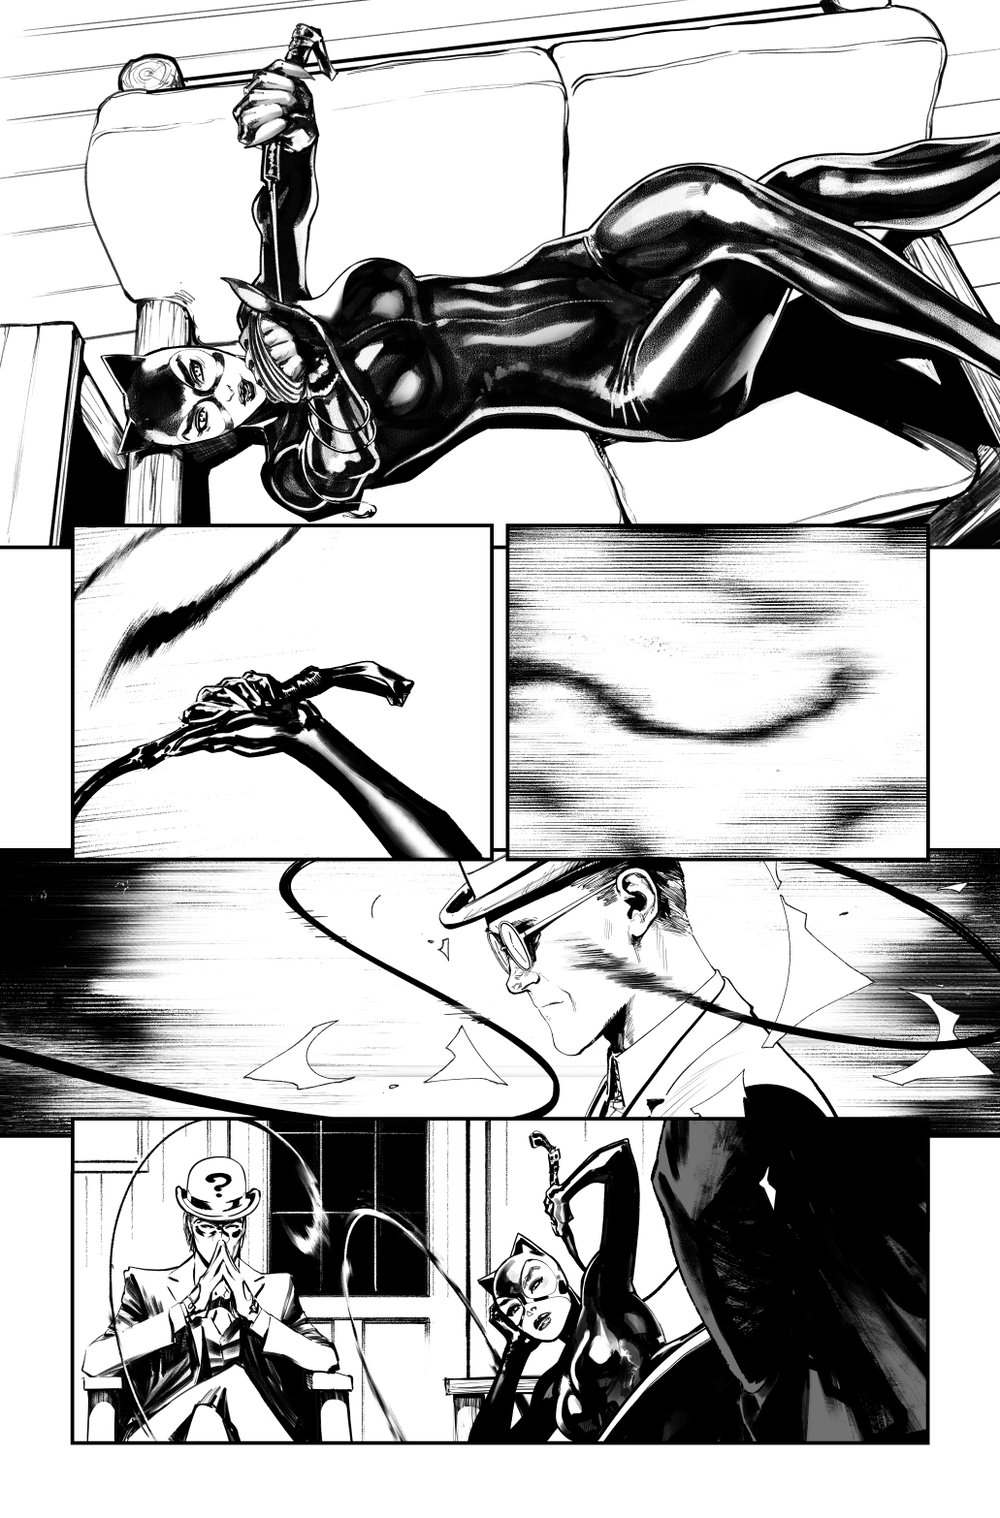 Image of BATMAN KILLING TIME #6 p.03